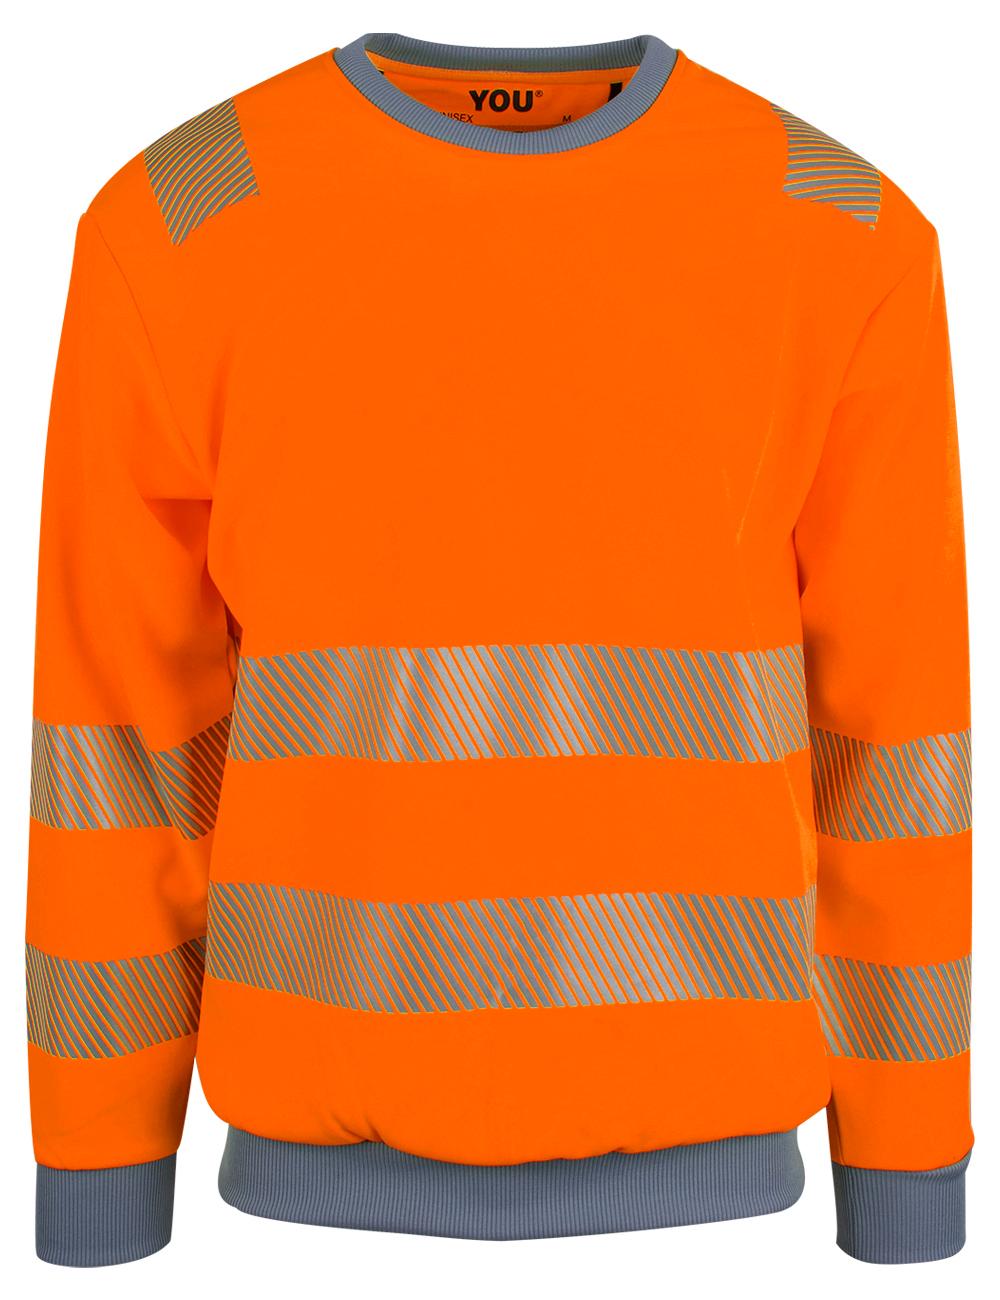 4681 Trelleborg Safety Orange